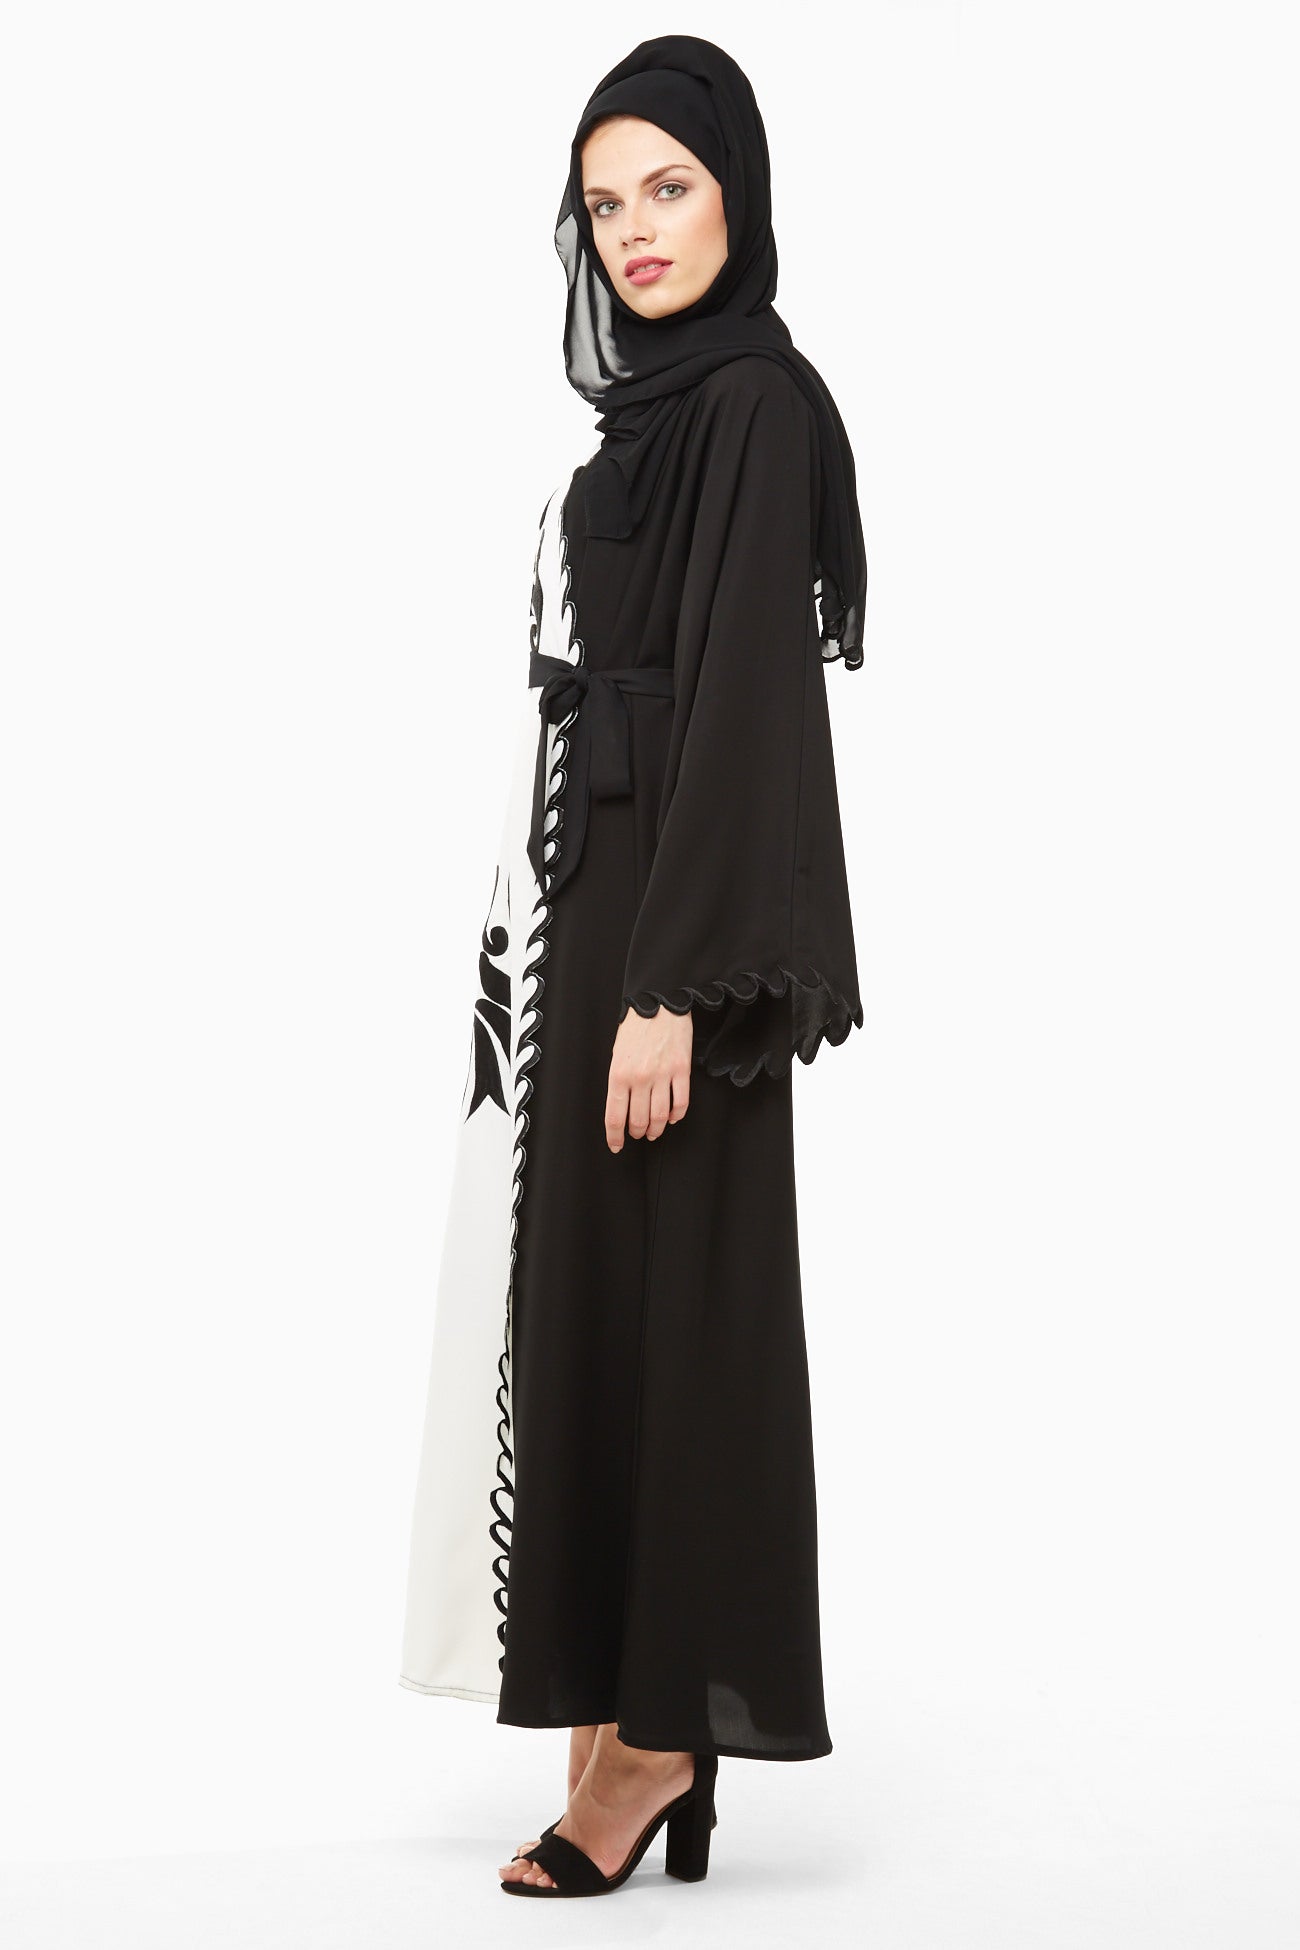 Dubai-made Nukhbaa brand Abaya a reflection of Dubai's luxury fashion scene-SQ3A